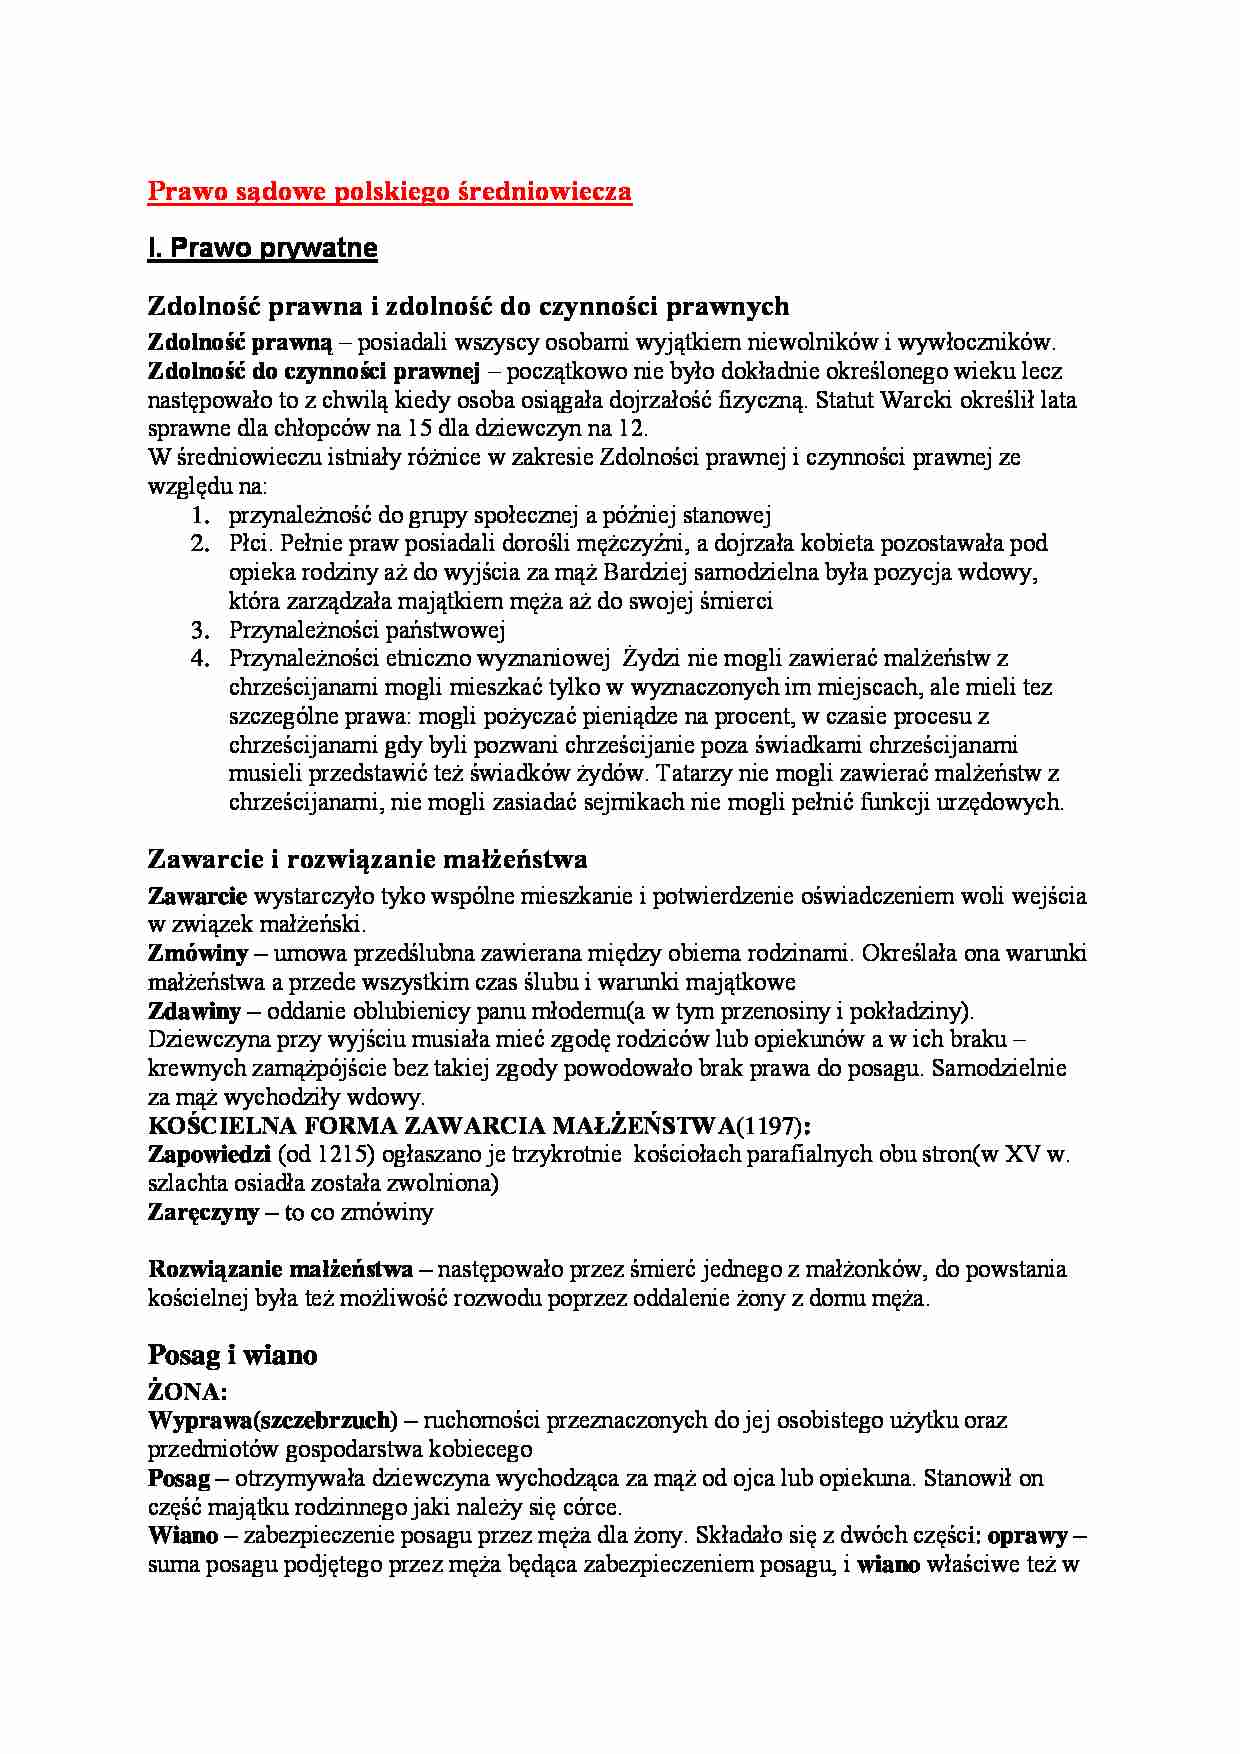 Prawo sądowe polskiego średniowiecza - Prawo prywatne - strona 1